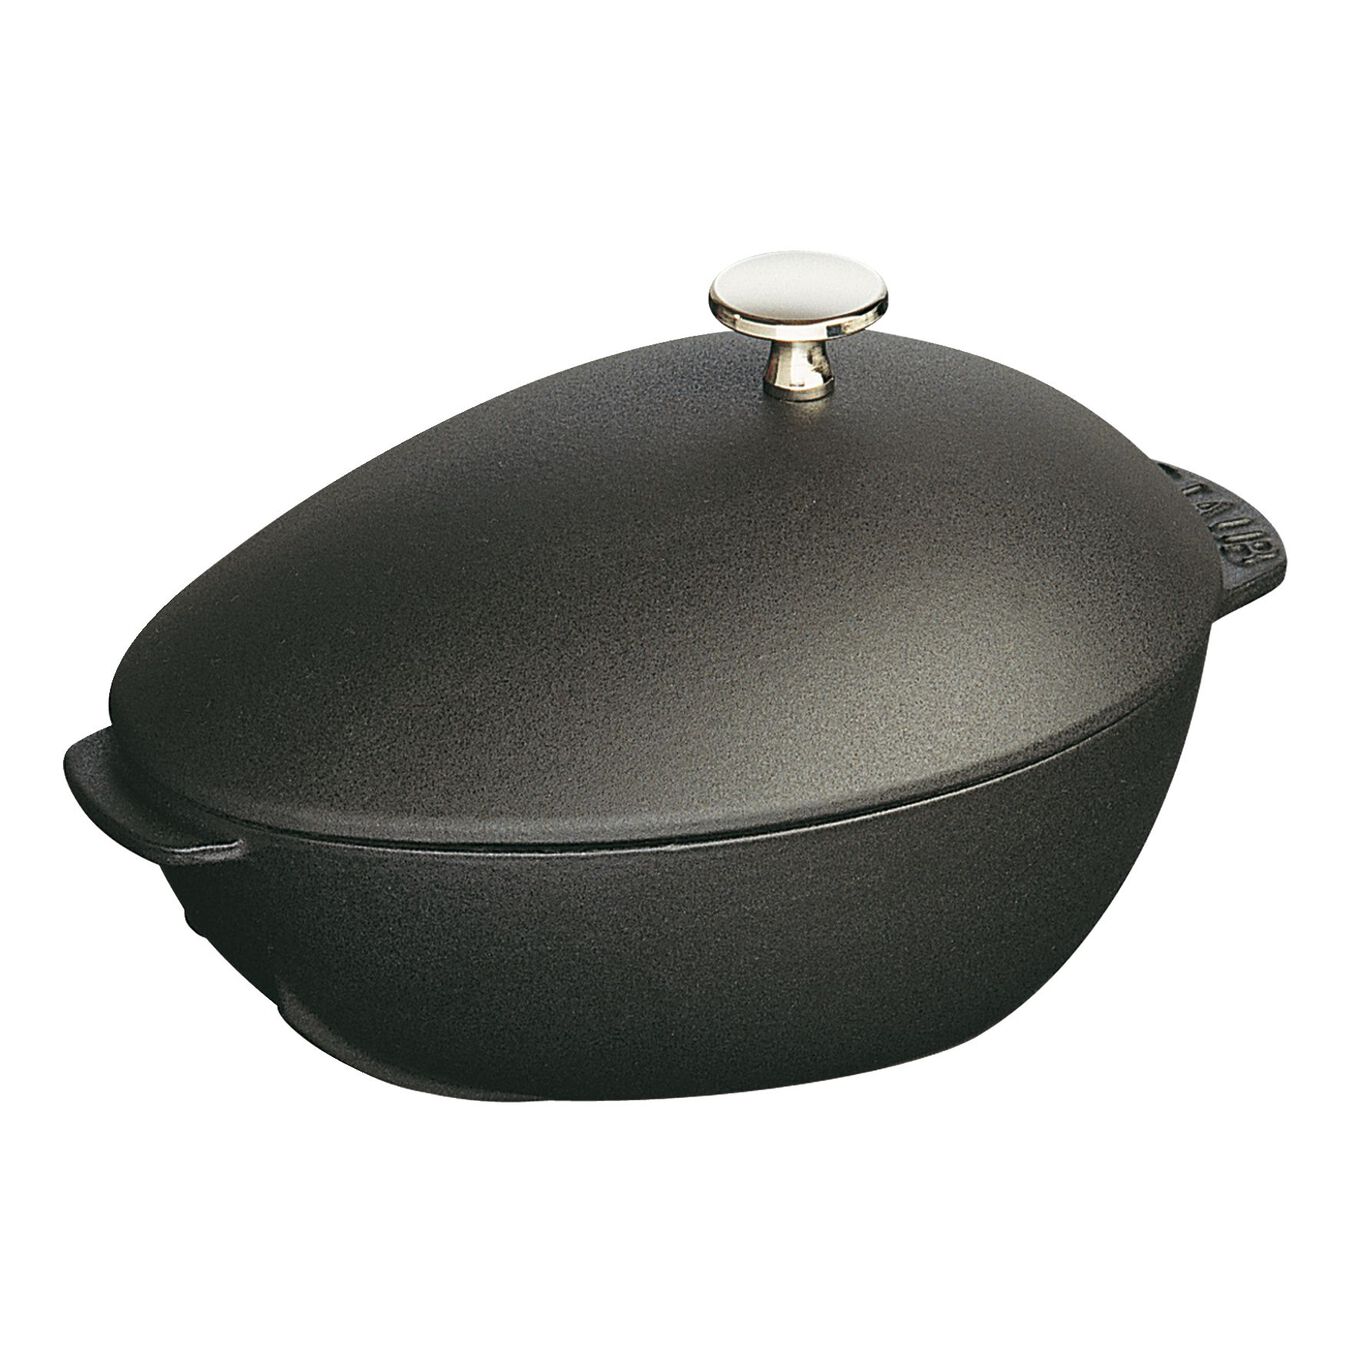 2 l cast iron oval Mussel pot, black,,large 5